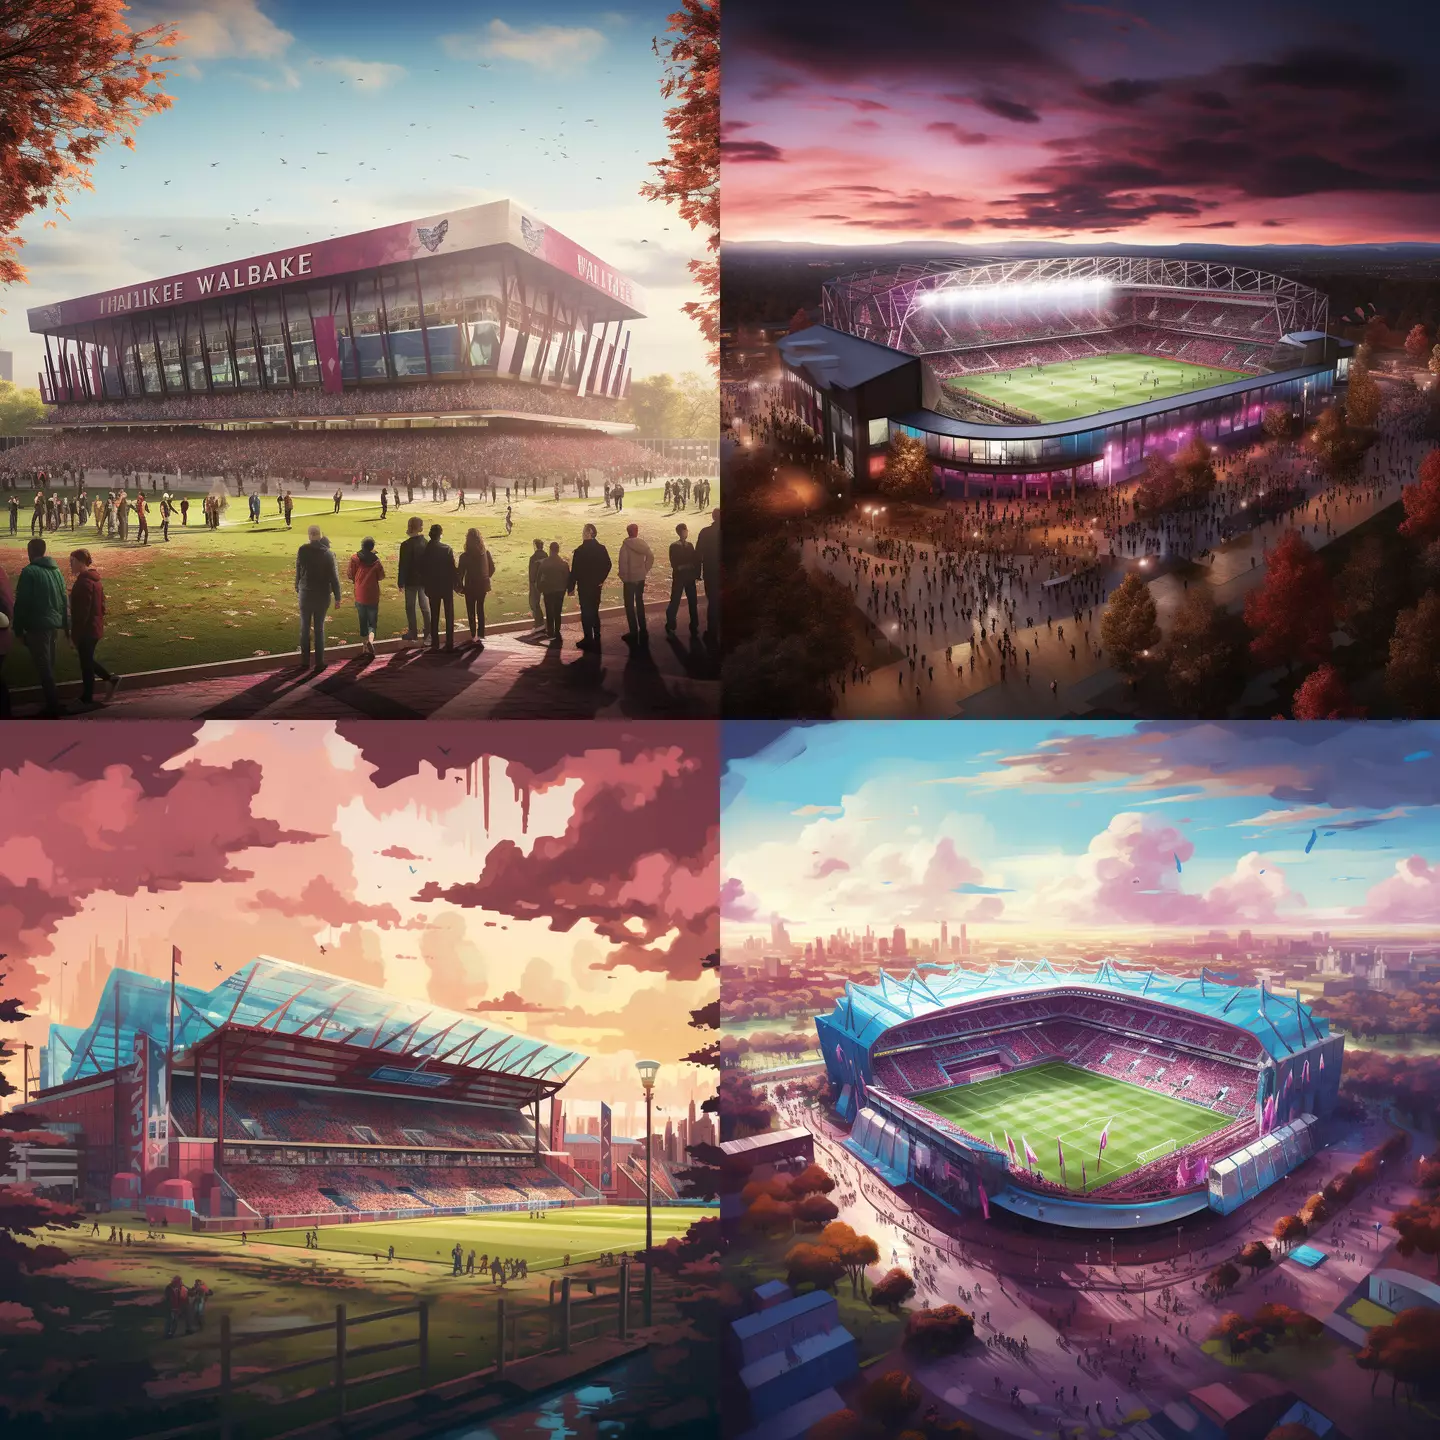 Aston Villa's home stadium, Villa Park